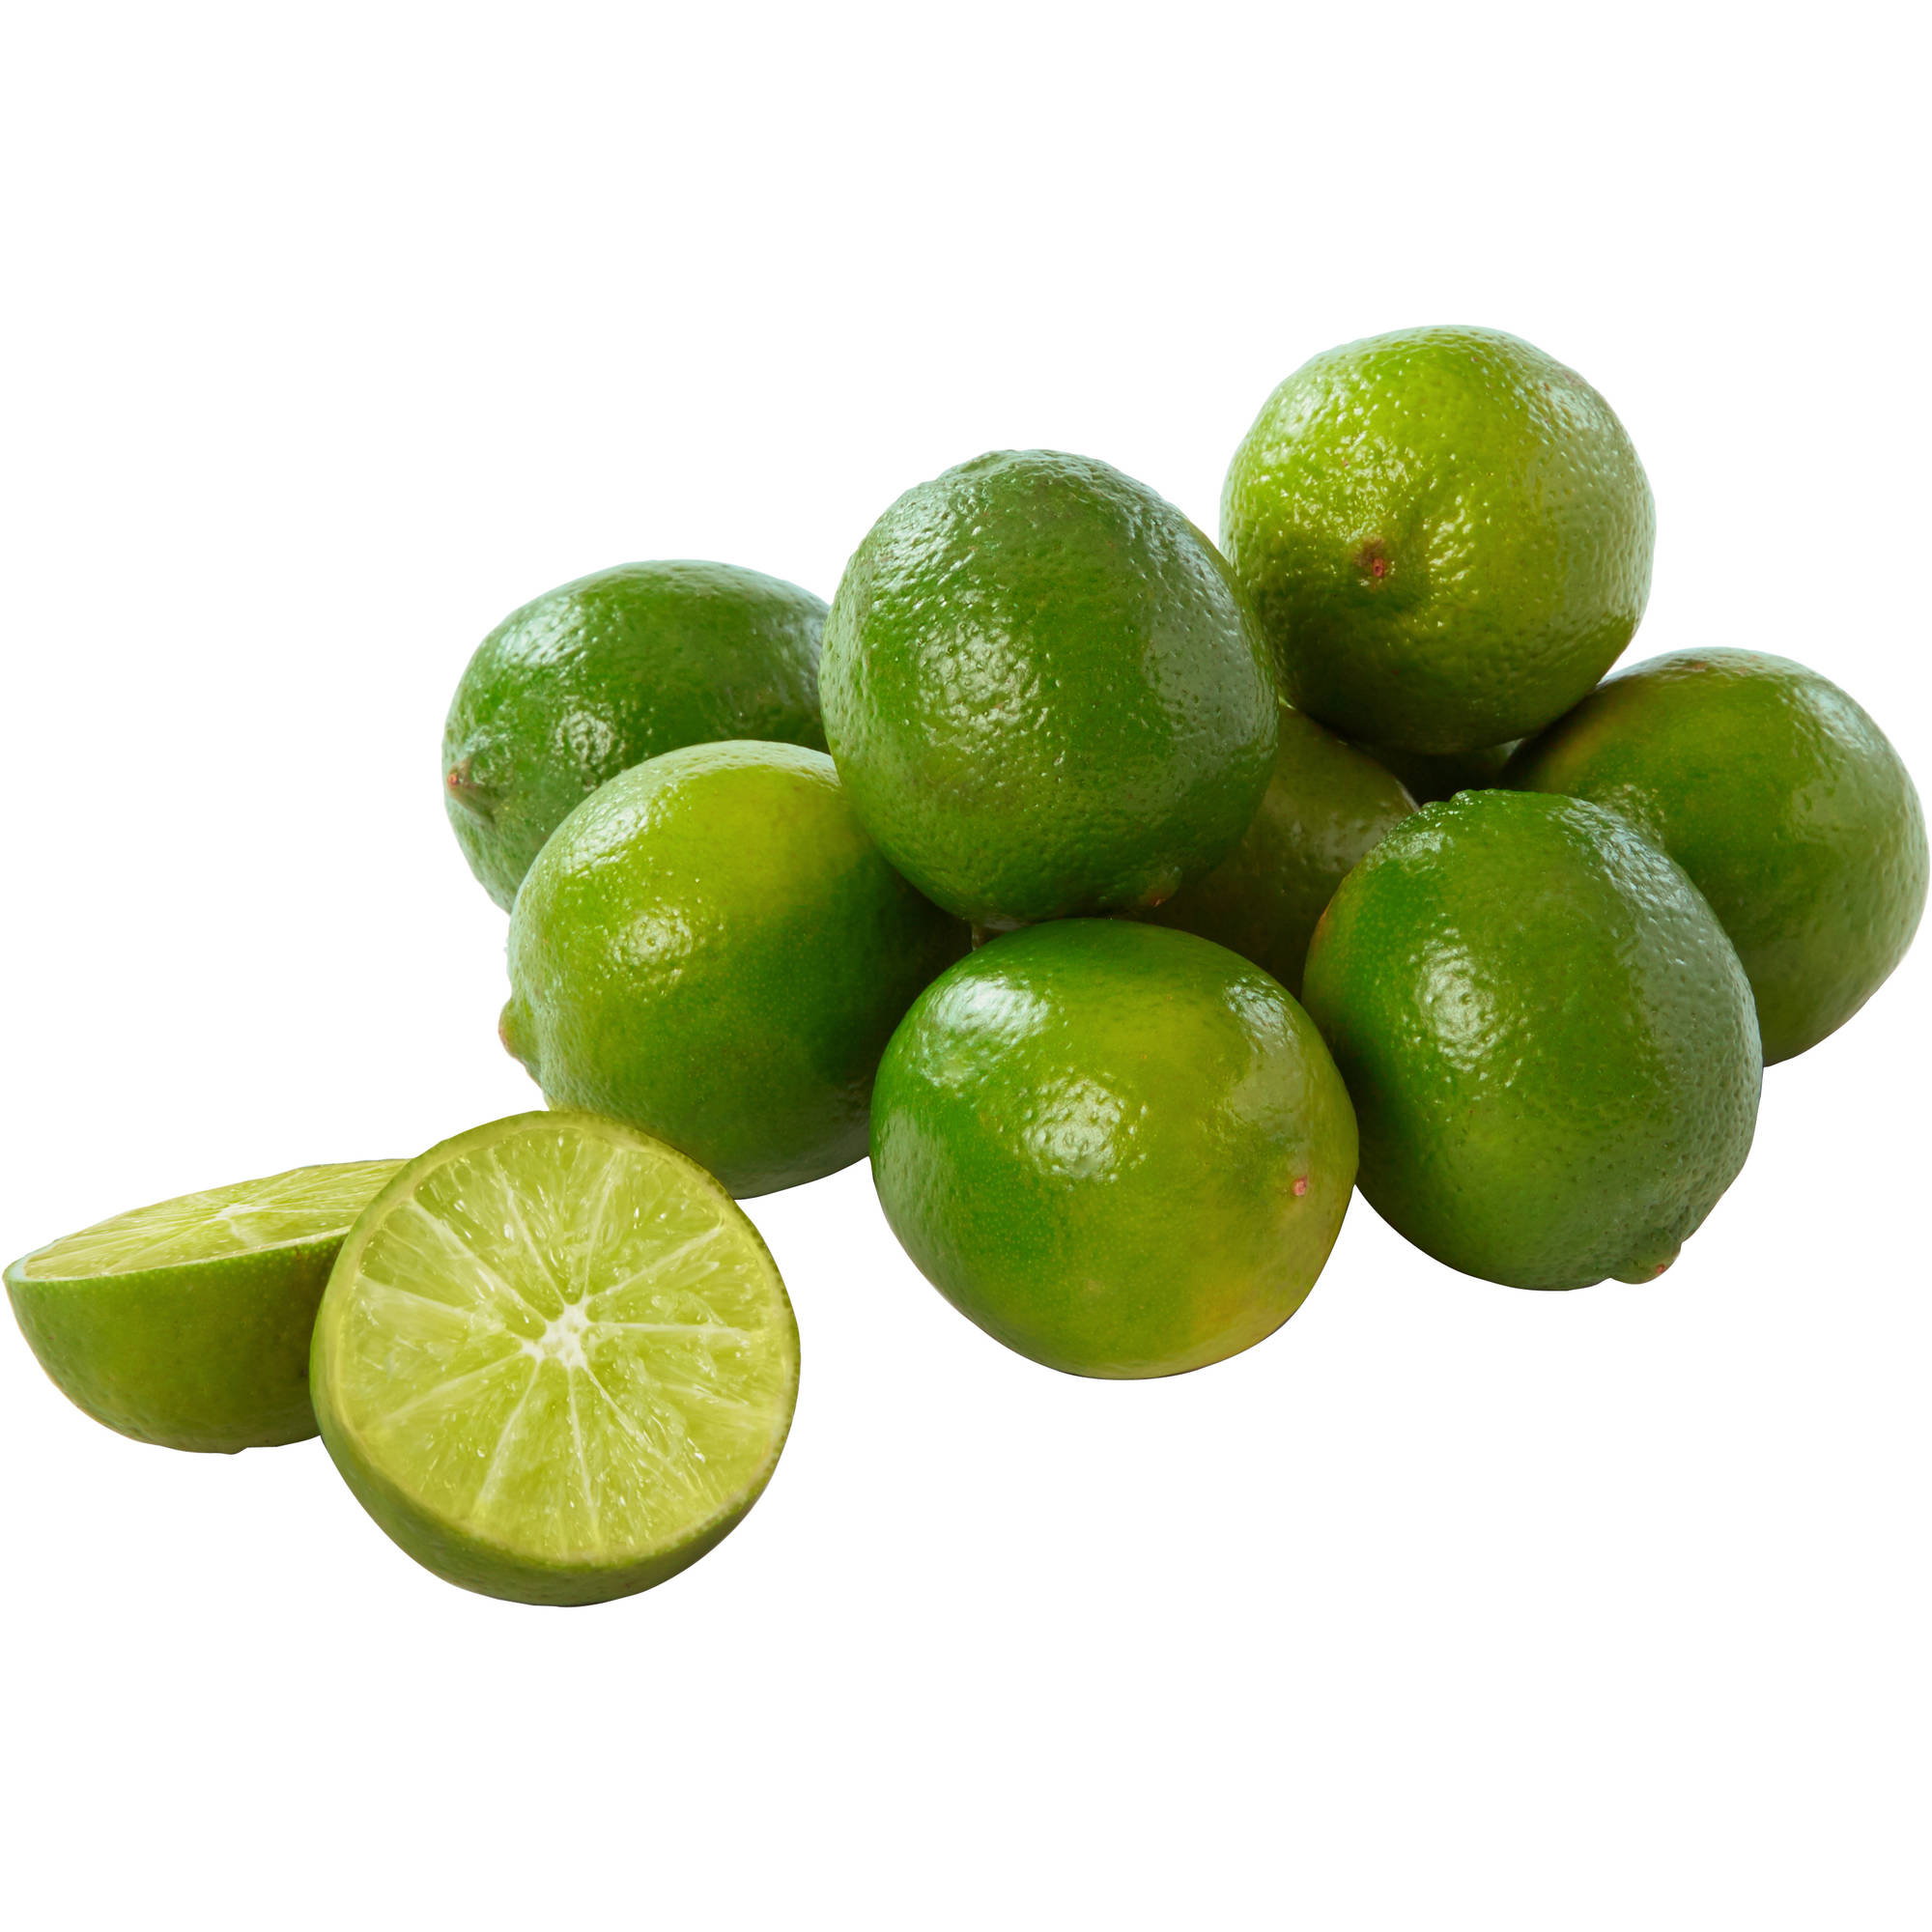 Fresh Limes, 6 Count Bag - image 1 of 3